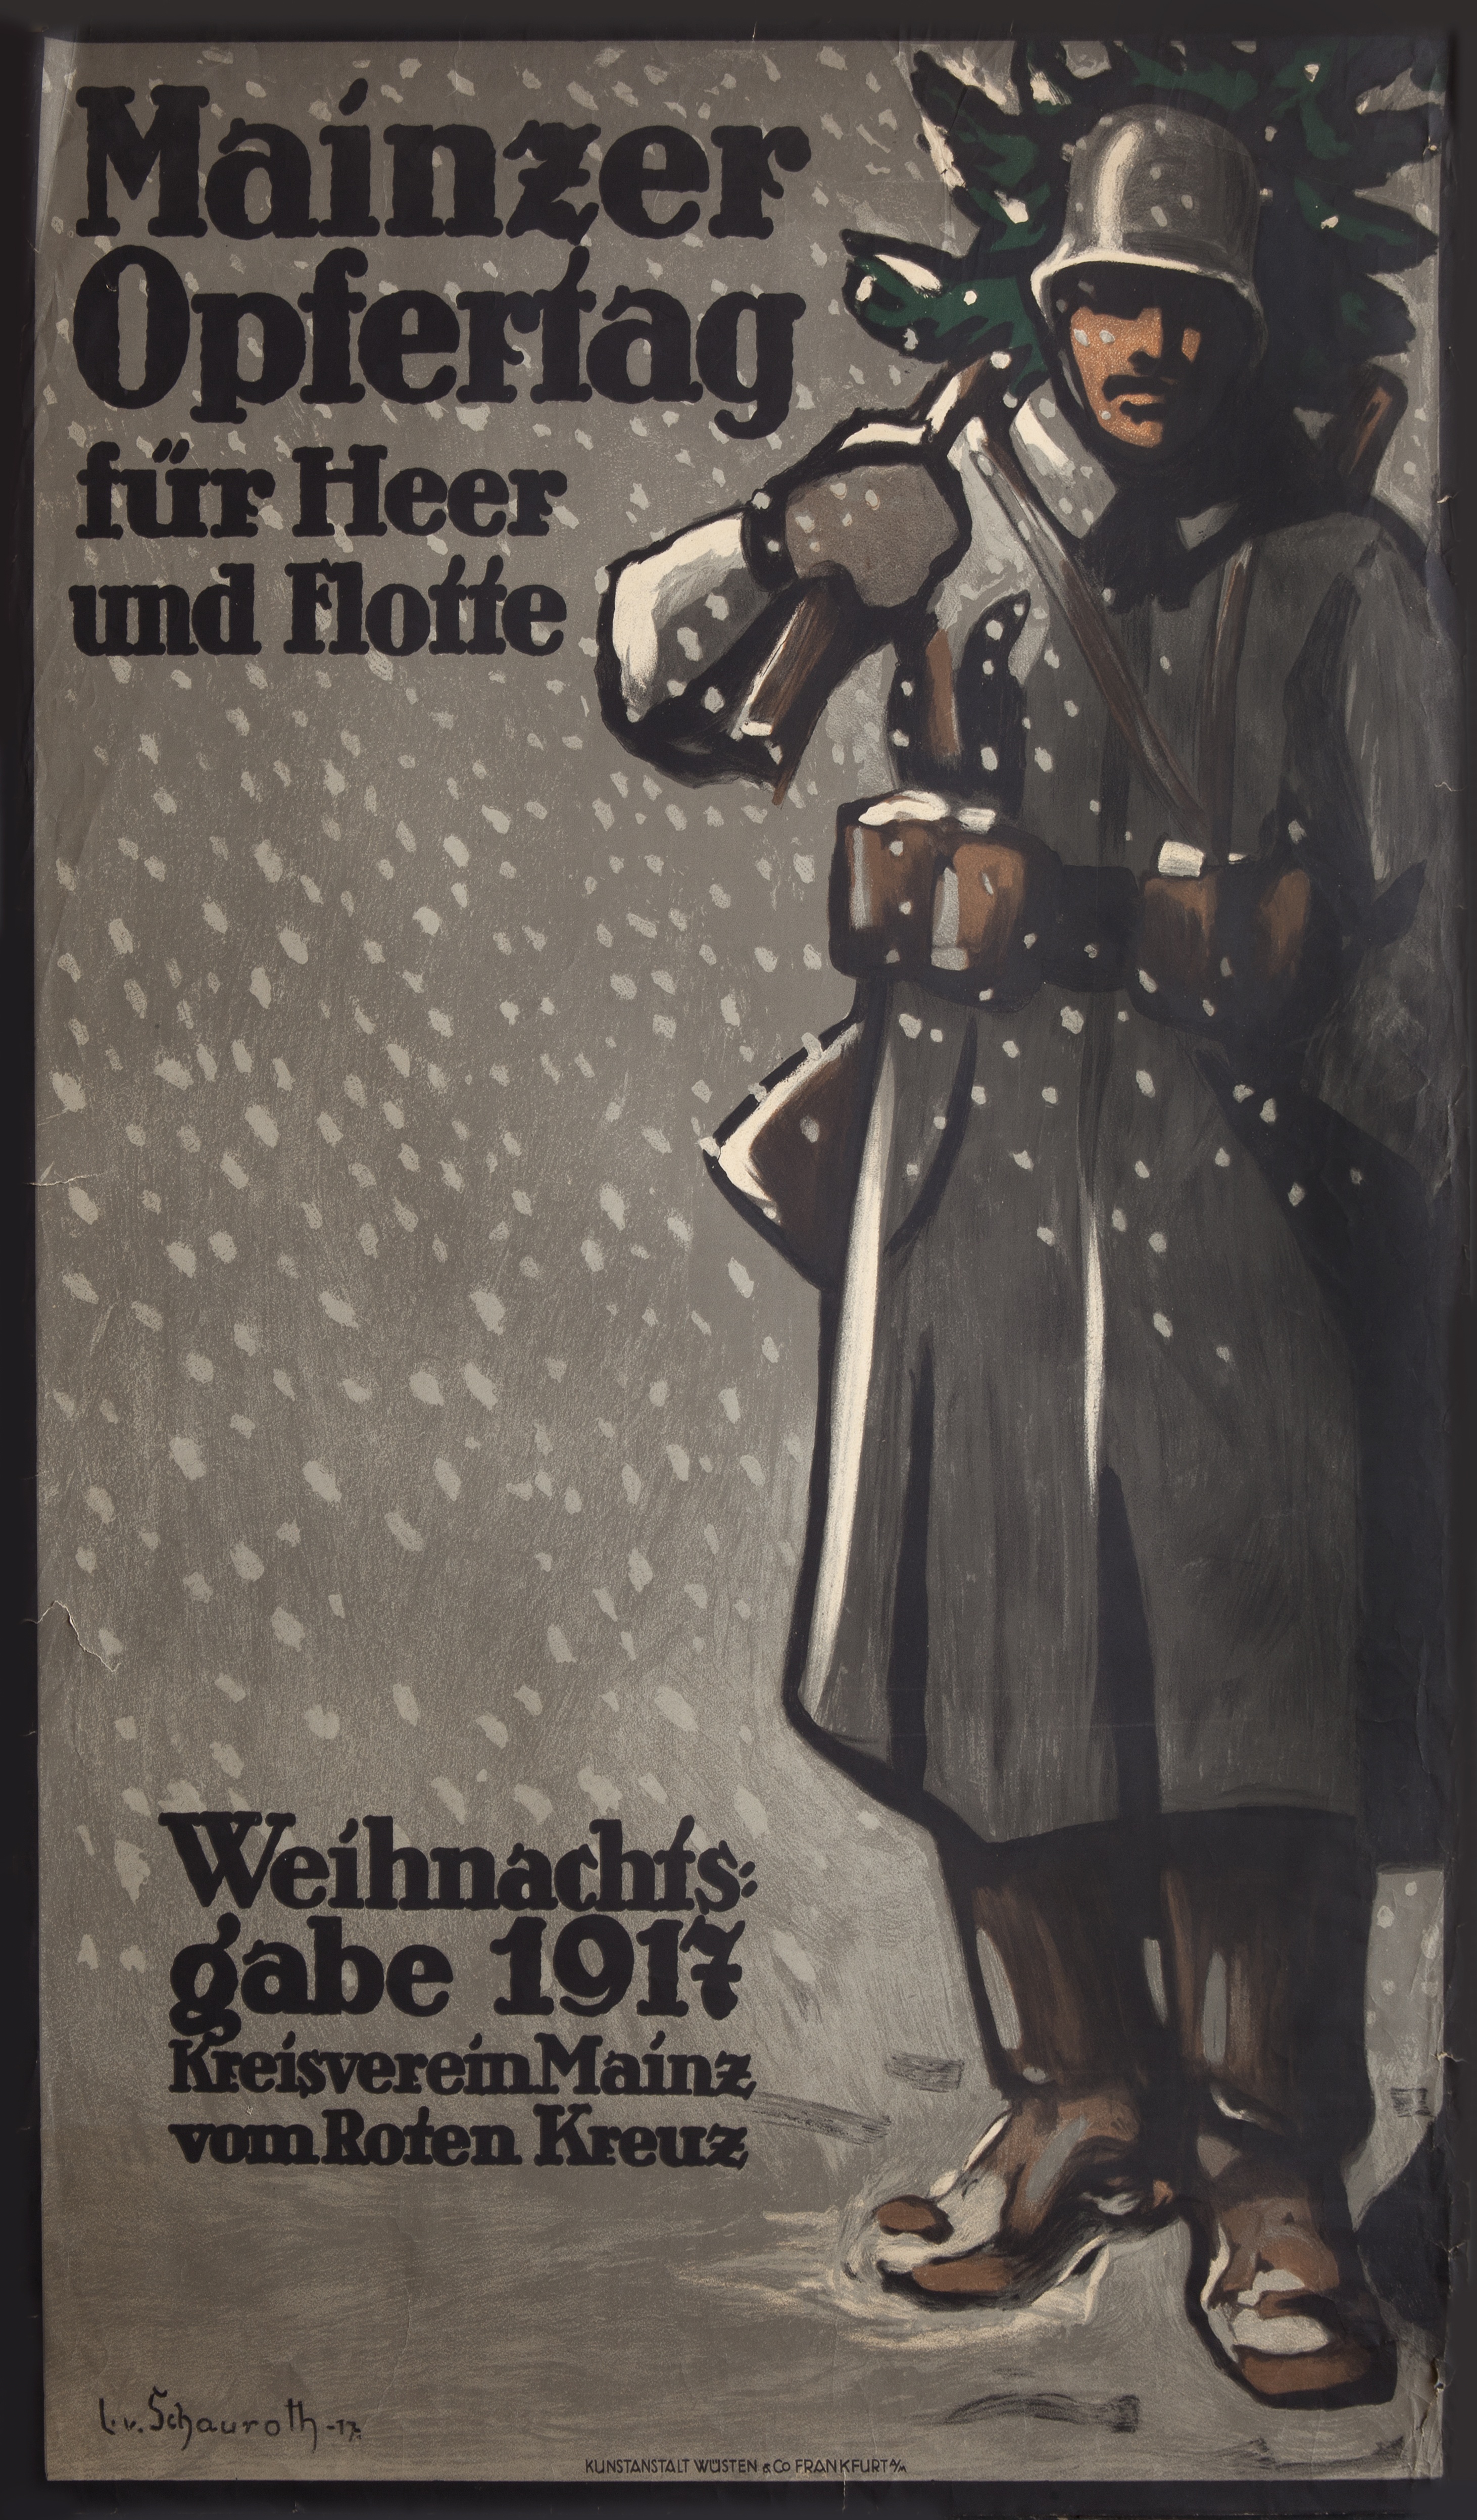 Mainzer Opfertag für Heer und flotte. Weihnachtsgabe 1917. Kreisverein Mainz vom Roten Kreuz (Gutenberg-Museum CC BY-NC-SA)